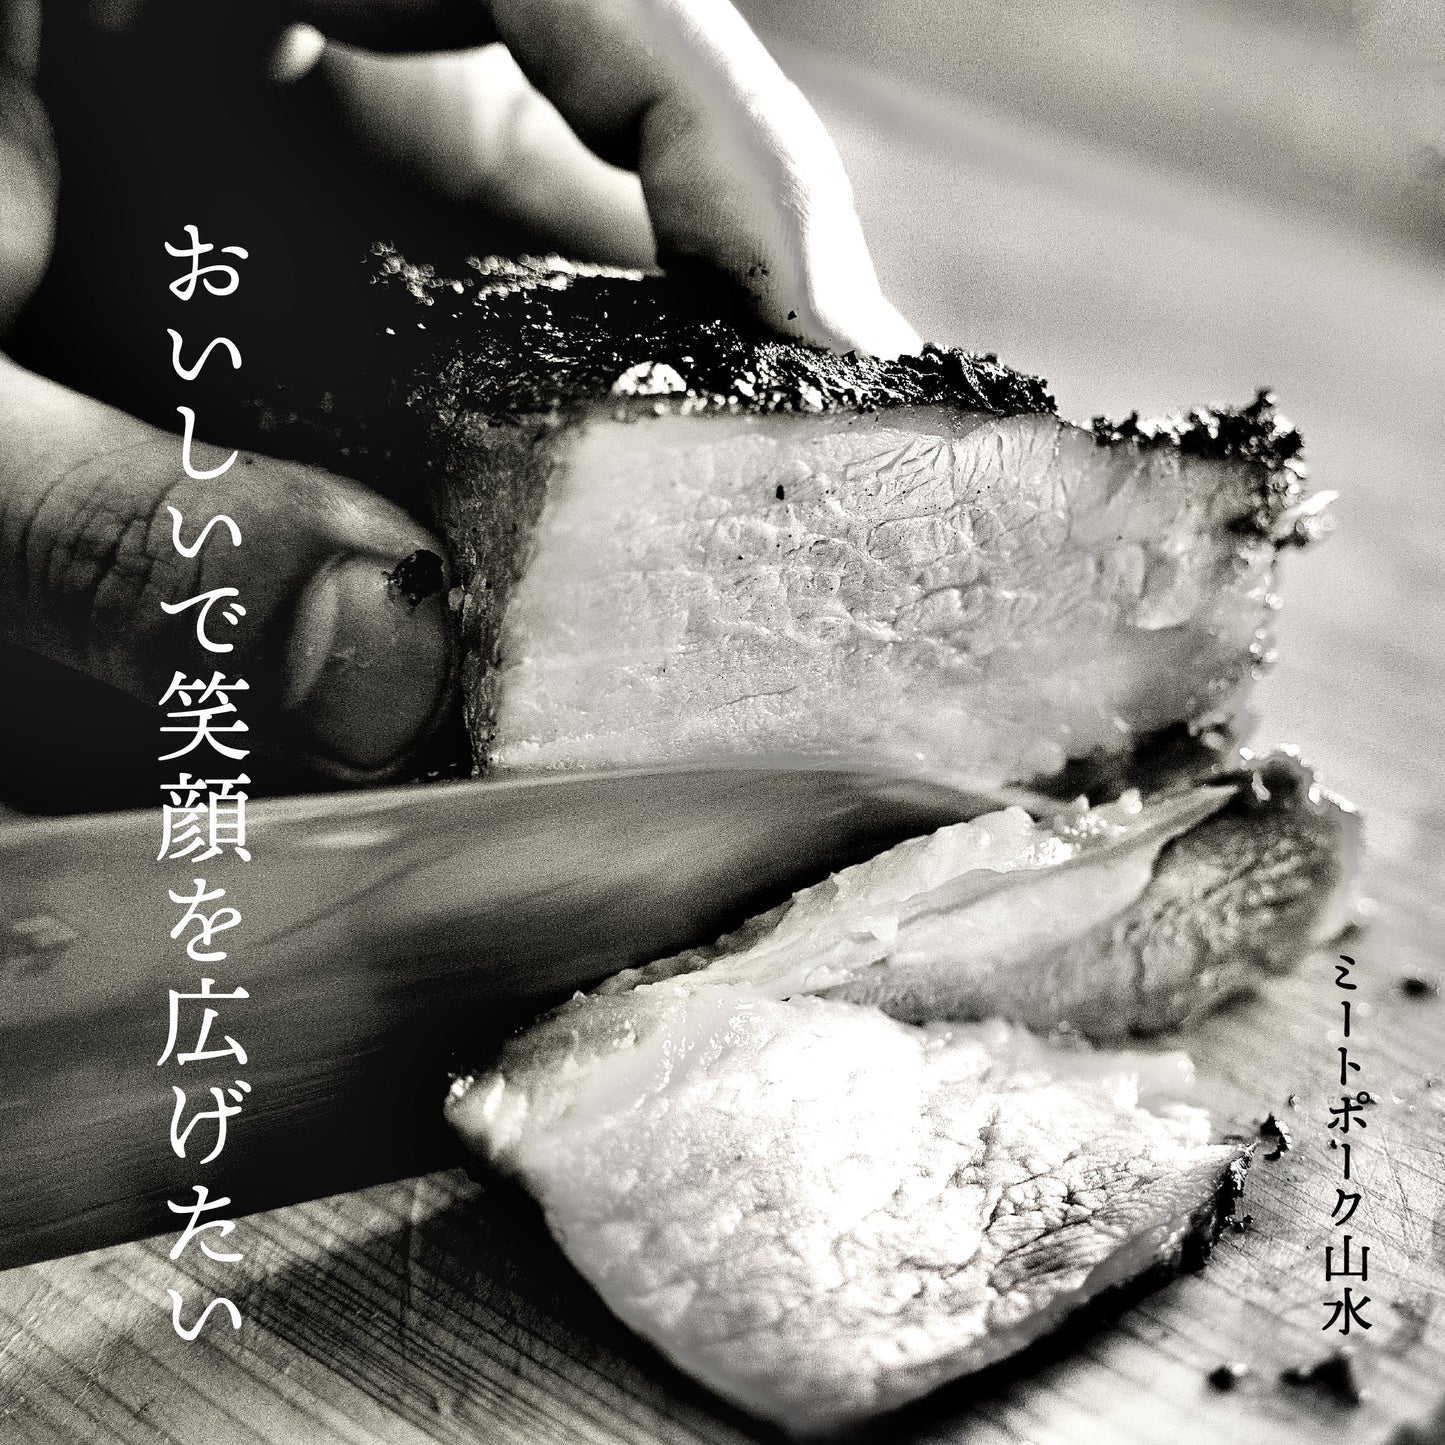 山水謹製 焼豚【香港古式】蜜汁チャーシュー 豚バラ